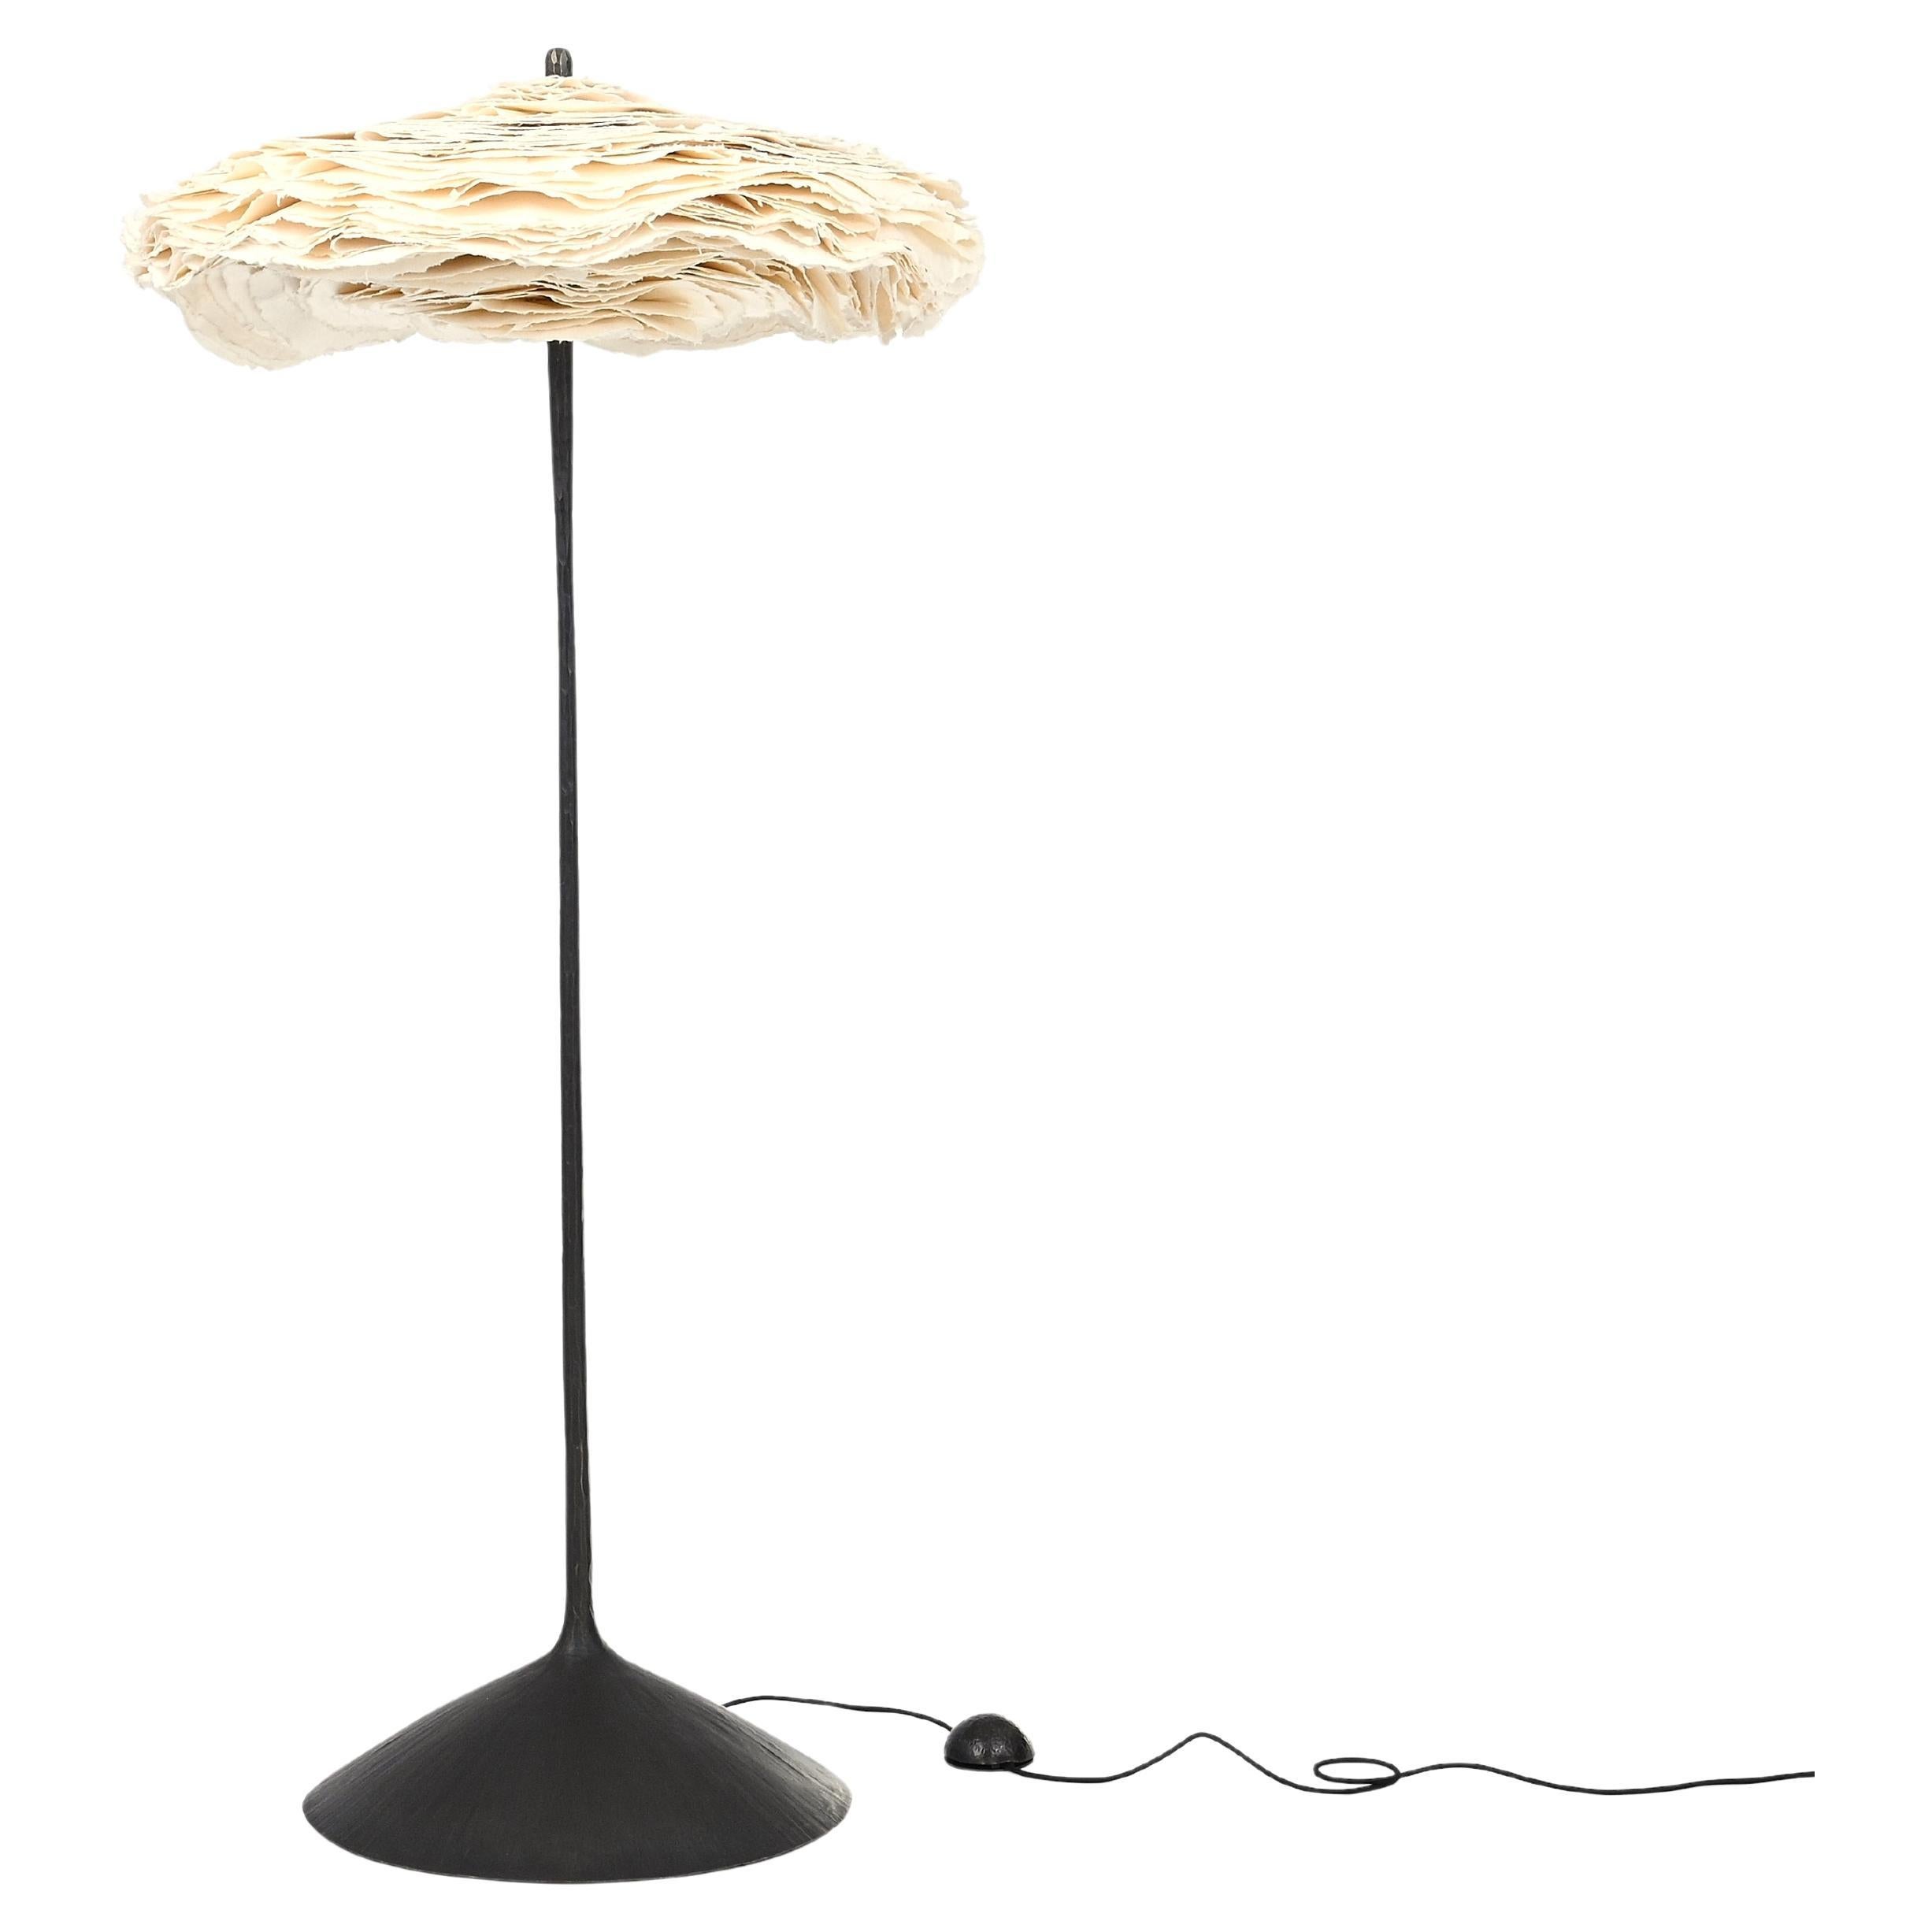 Maria Group + Spockdesign “Cornette” Floor Lamp For Sale